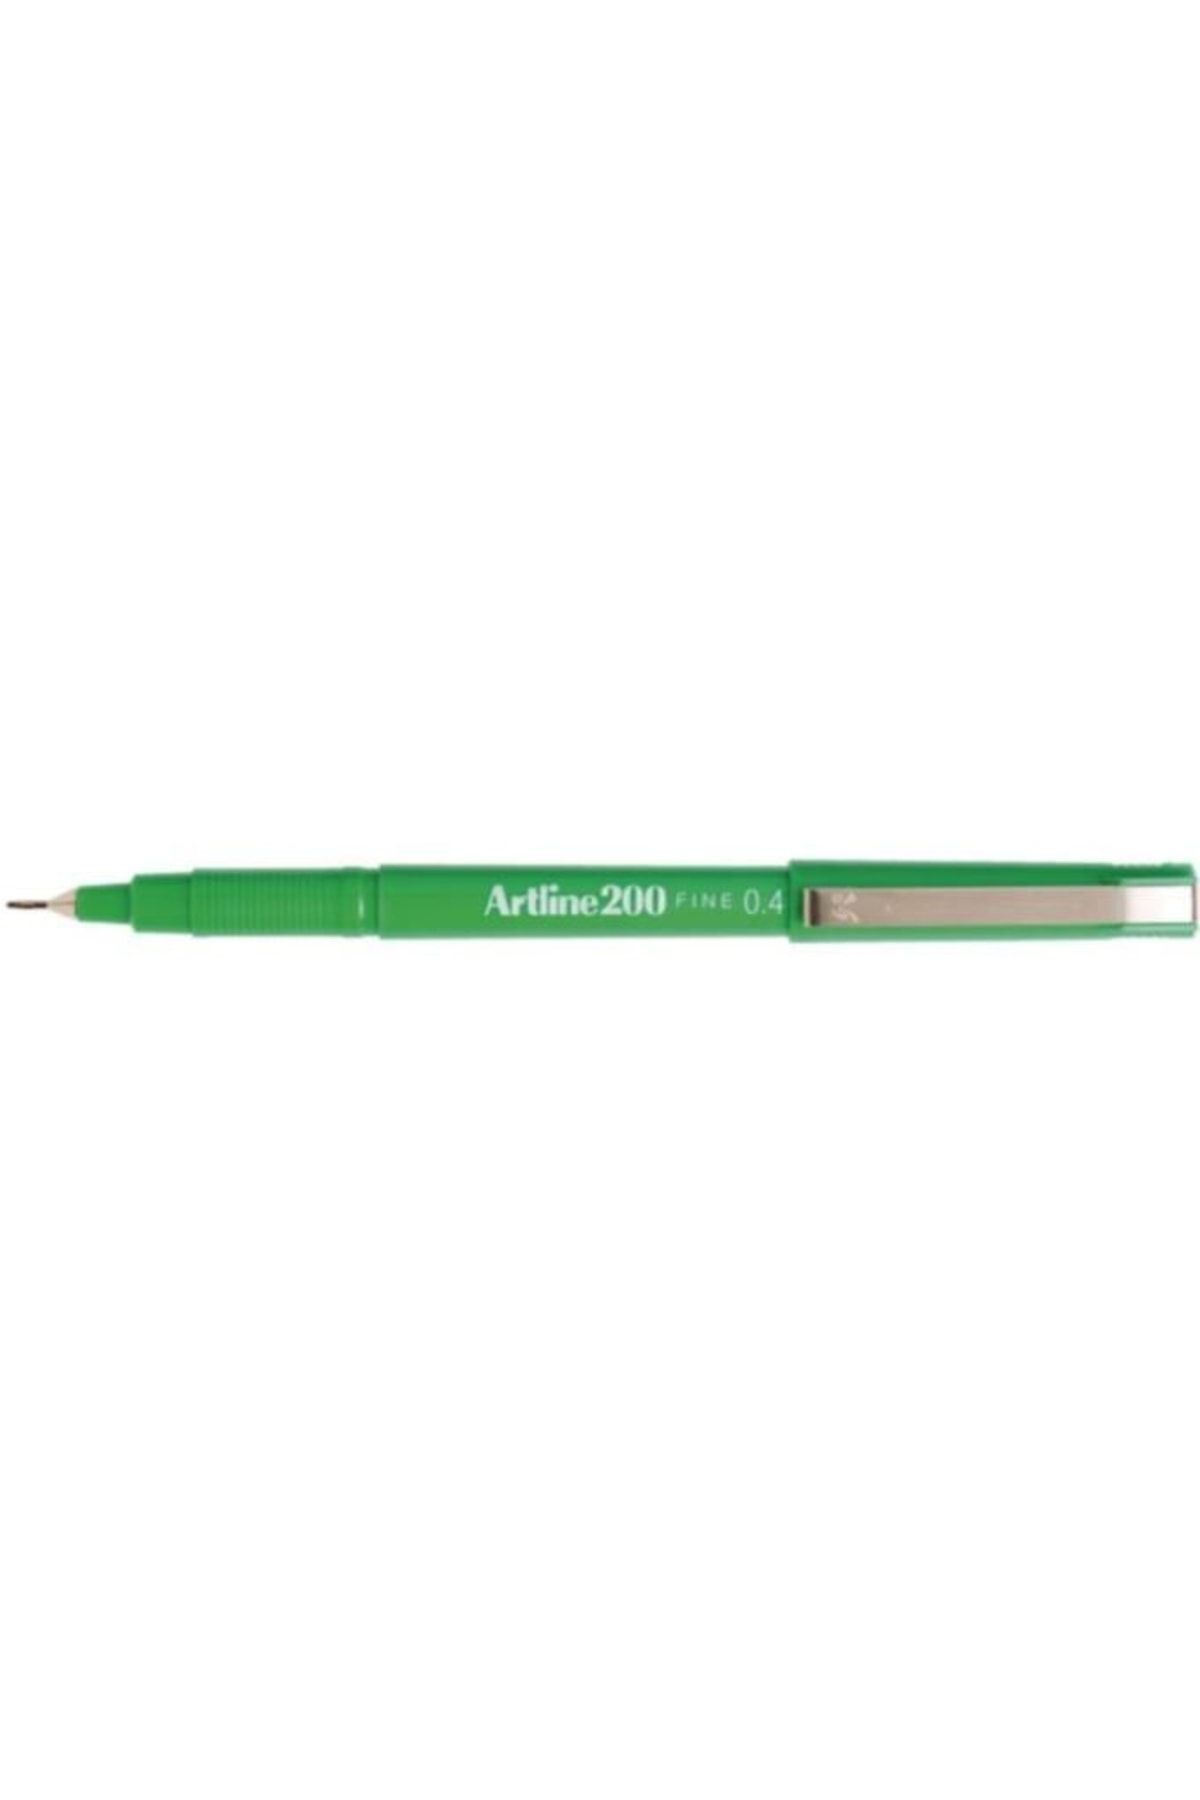 artline Ek-200 Fineliner Ince Uçlu Keçeli Kalem 0.4 Mm Yeşil